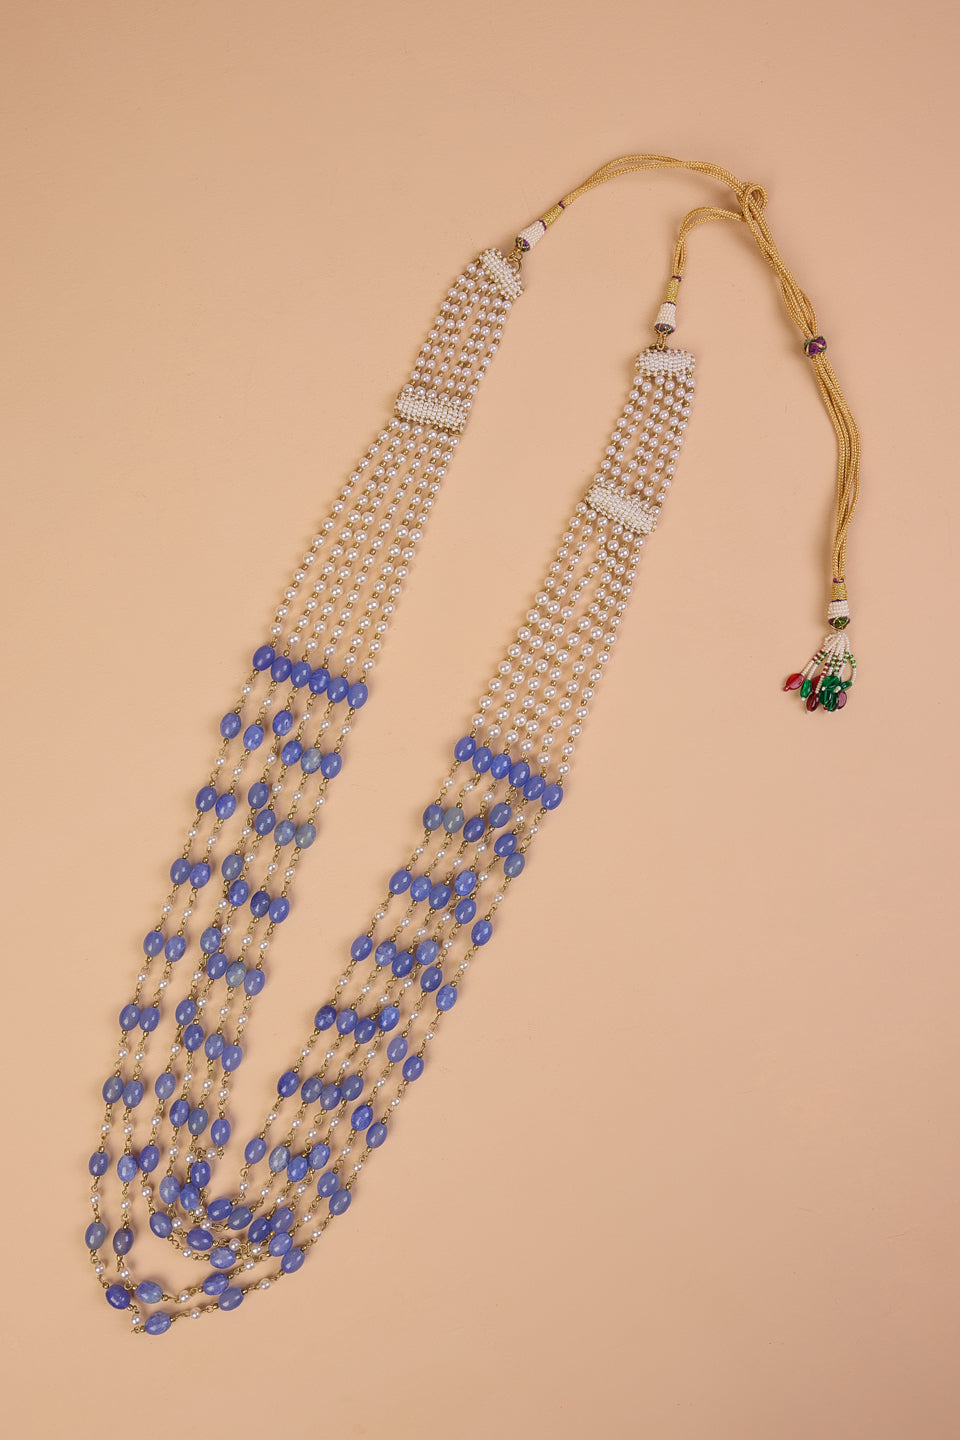 6 Layered Ivory & Blue Beads Mala